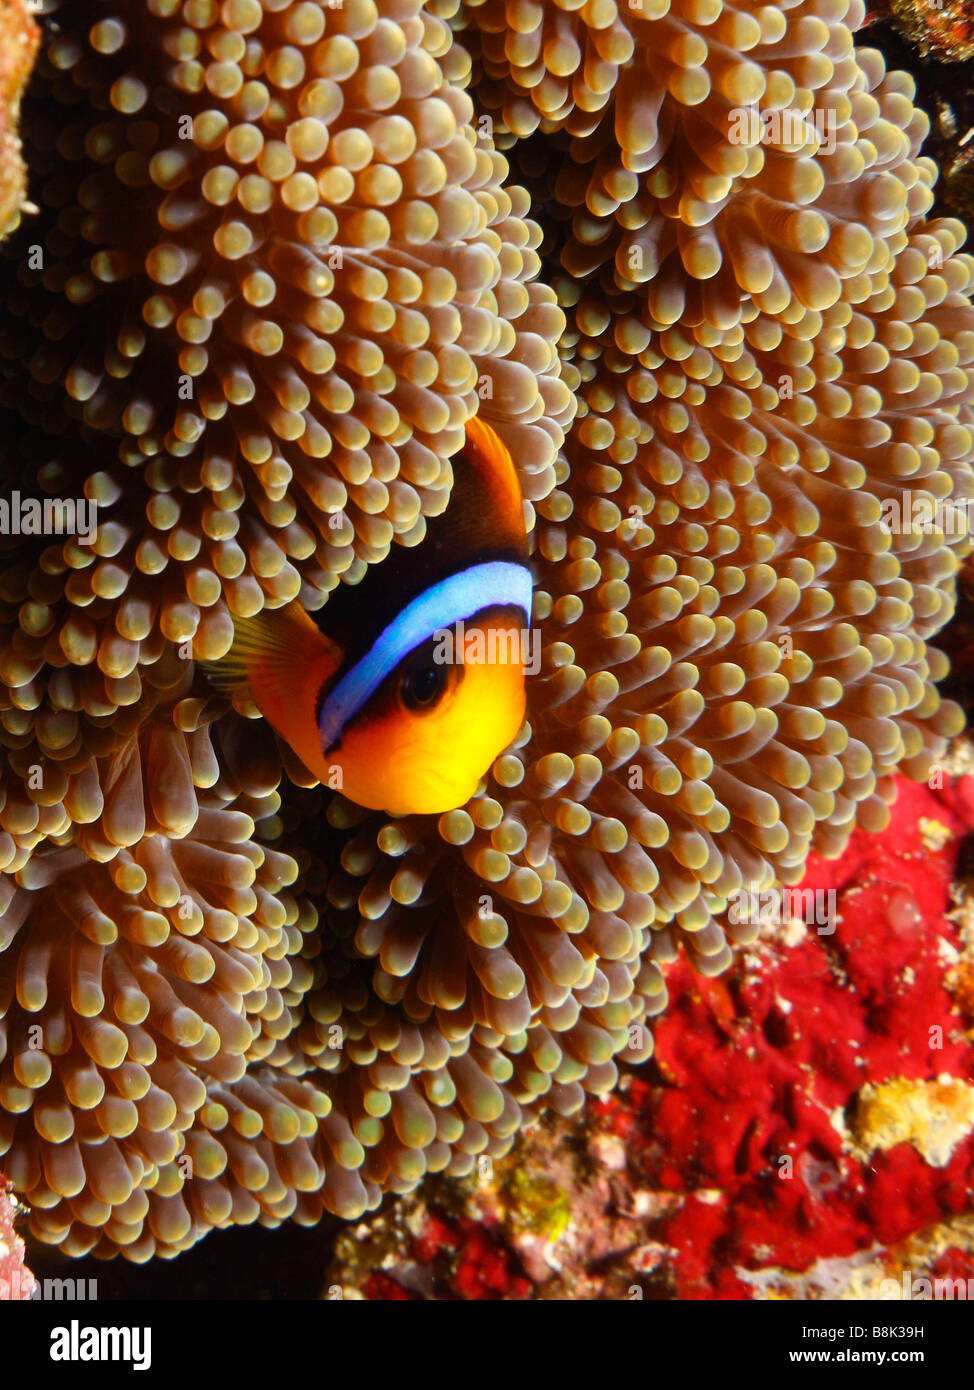 Orange-Finned Anemonenfische Kommissionierung aus Anemone Tentakeln Stockfoto